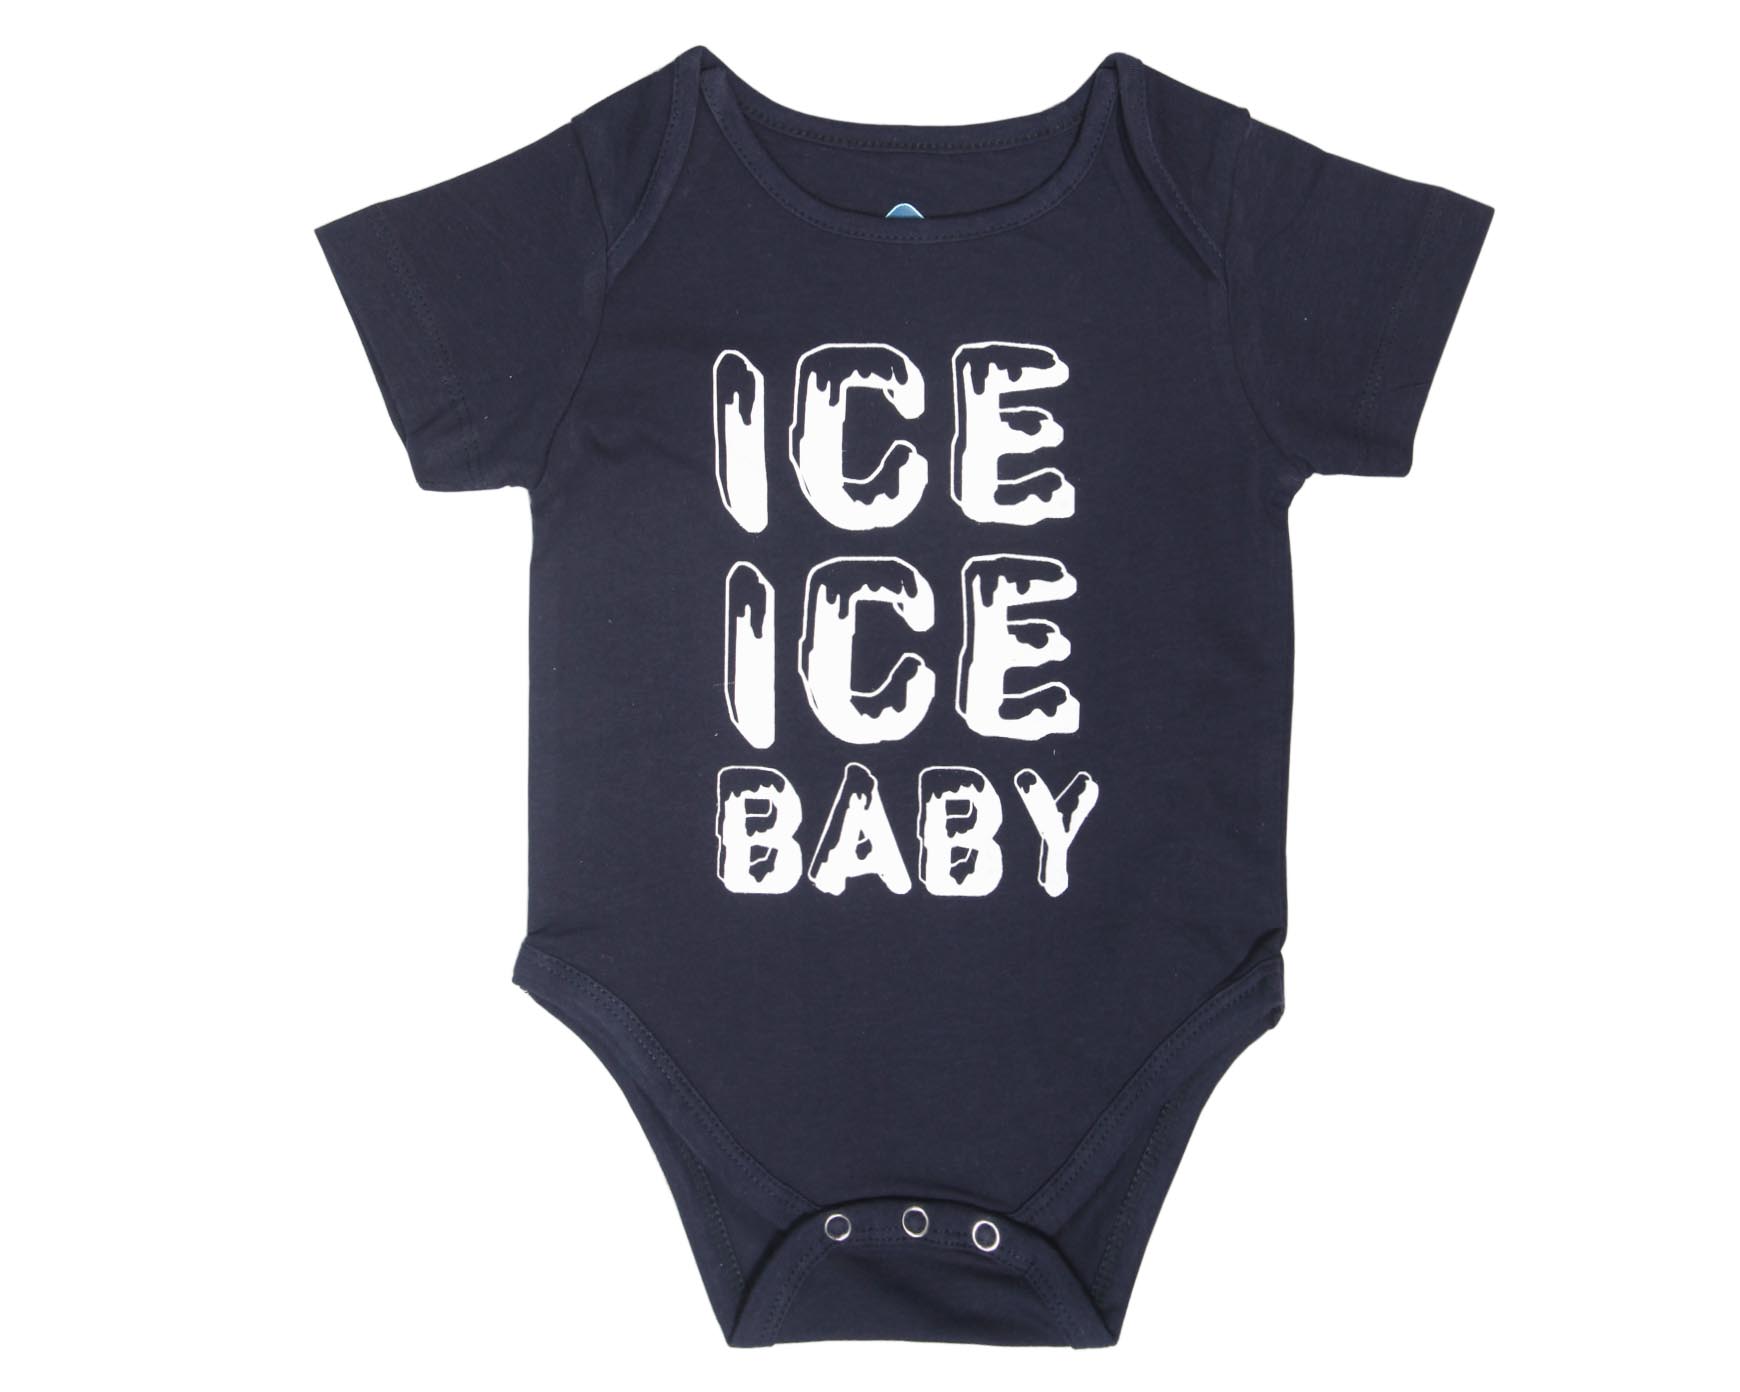 ICE-ICE-BABY